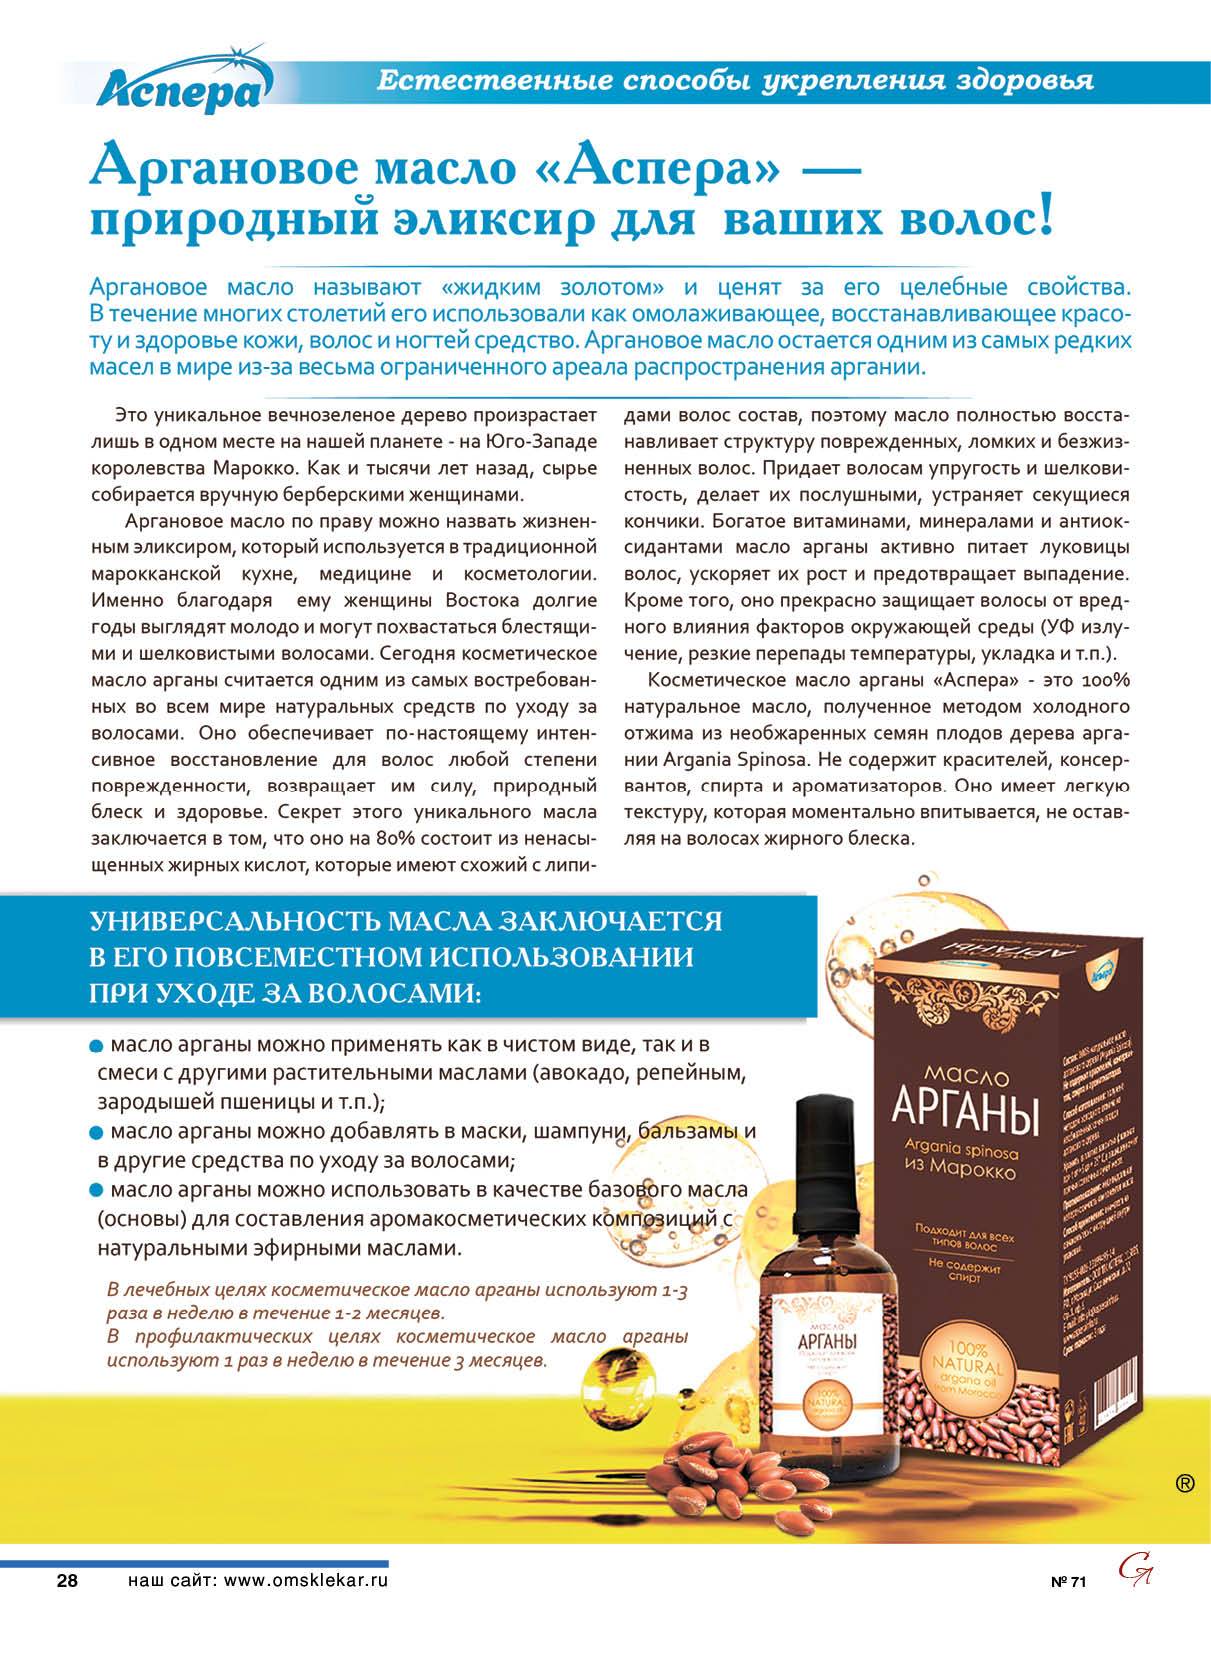 Аргановое масло для лица: состав и использование натурального средства, отзывы